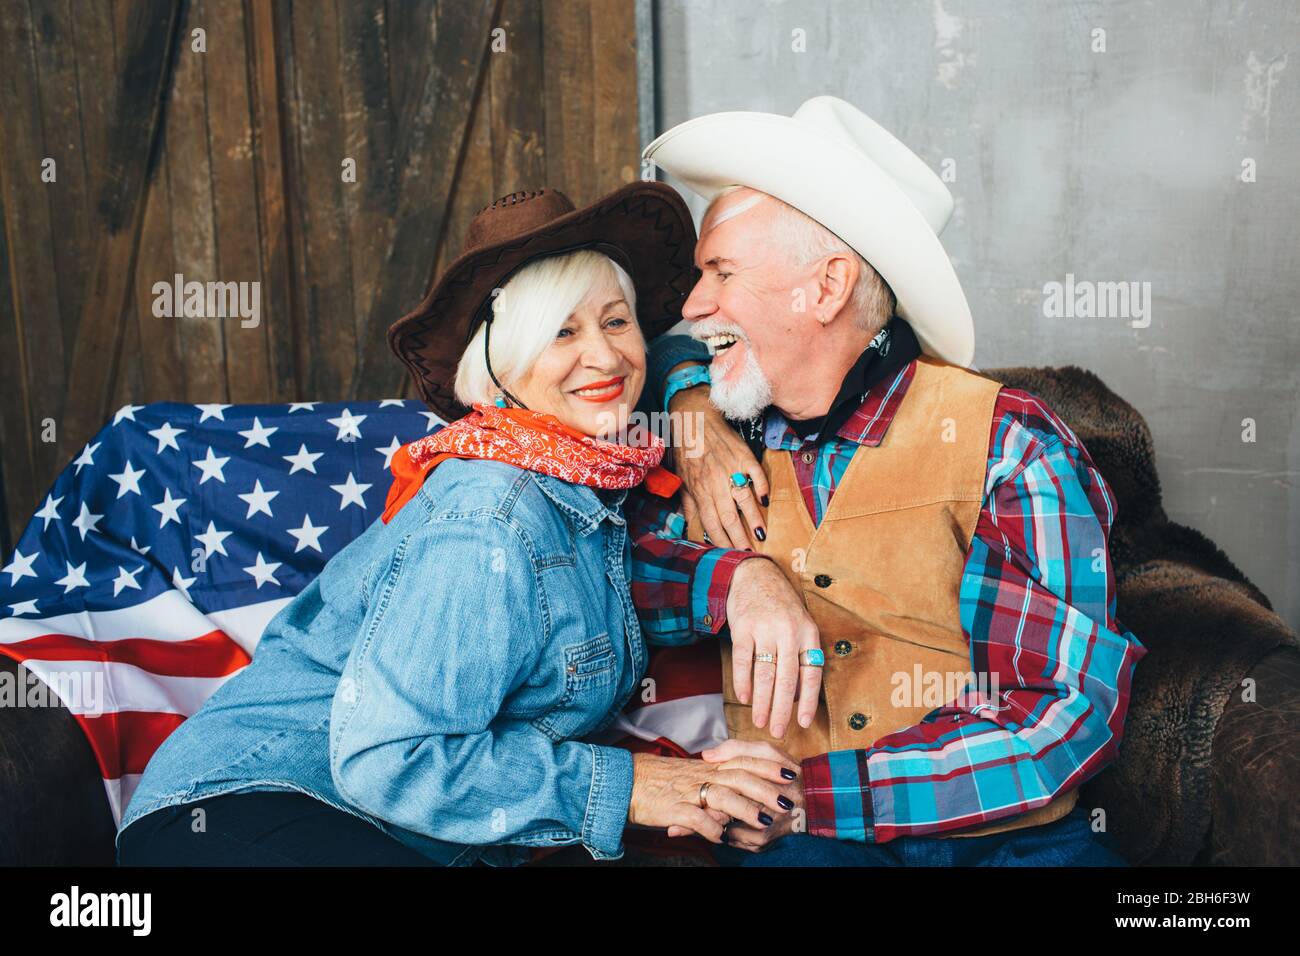 couple âgé, vêtu de chapeaux de cowboy, rire, se prenant les mains de l'autre. Derrière, sur le canapé se trouve le drapeau américain, la célébration de l'Amérique dans Banque D'Images